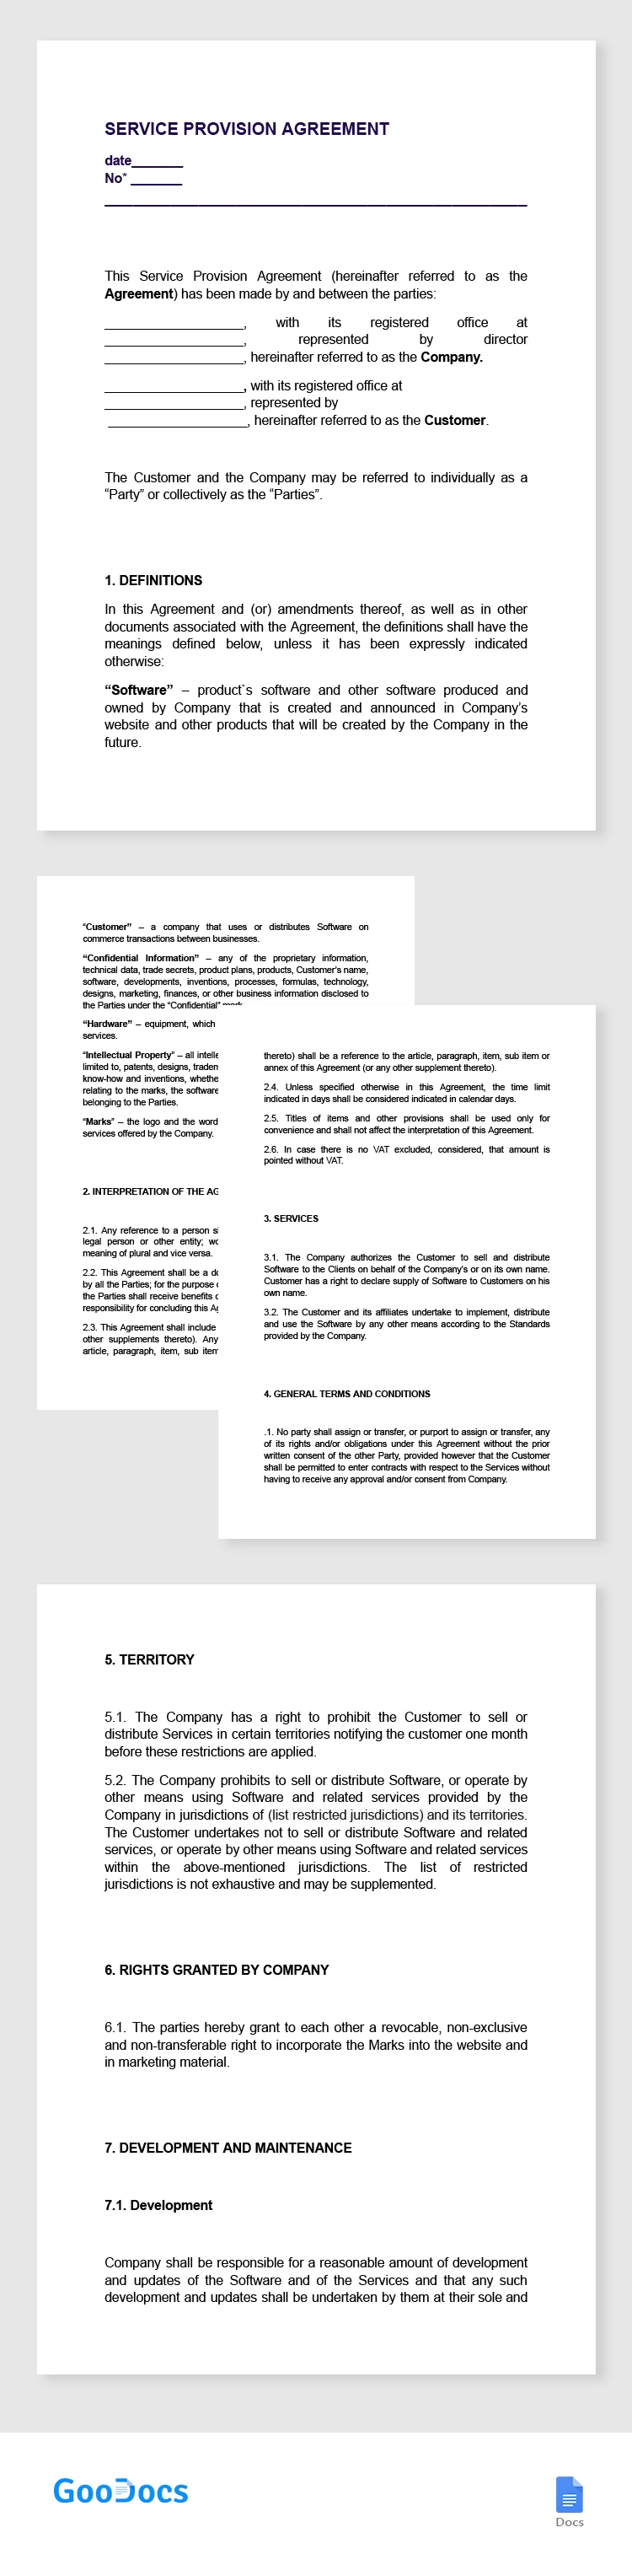 Acordo de Serviço - free Google Docs Template - 10065363